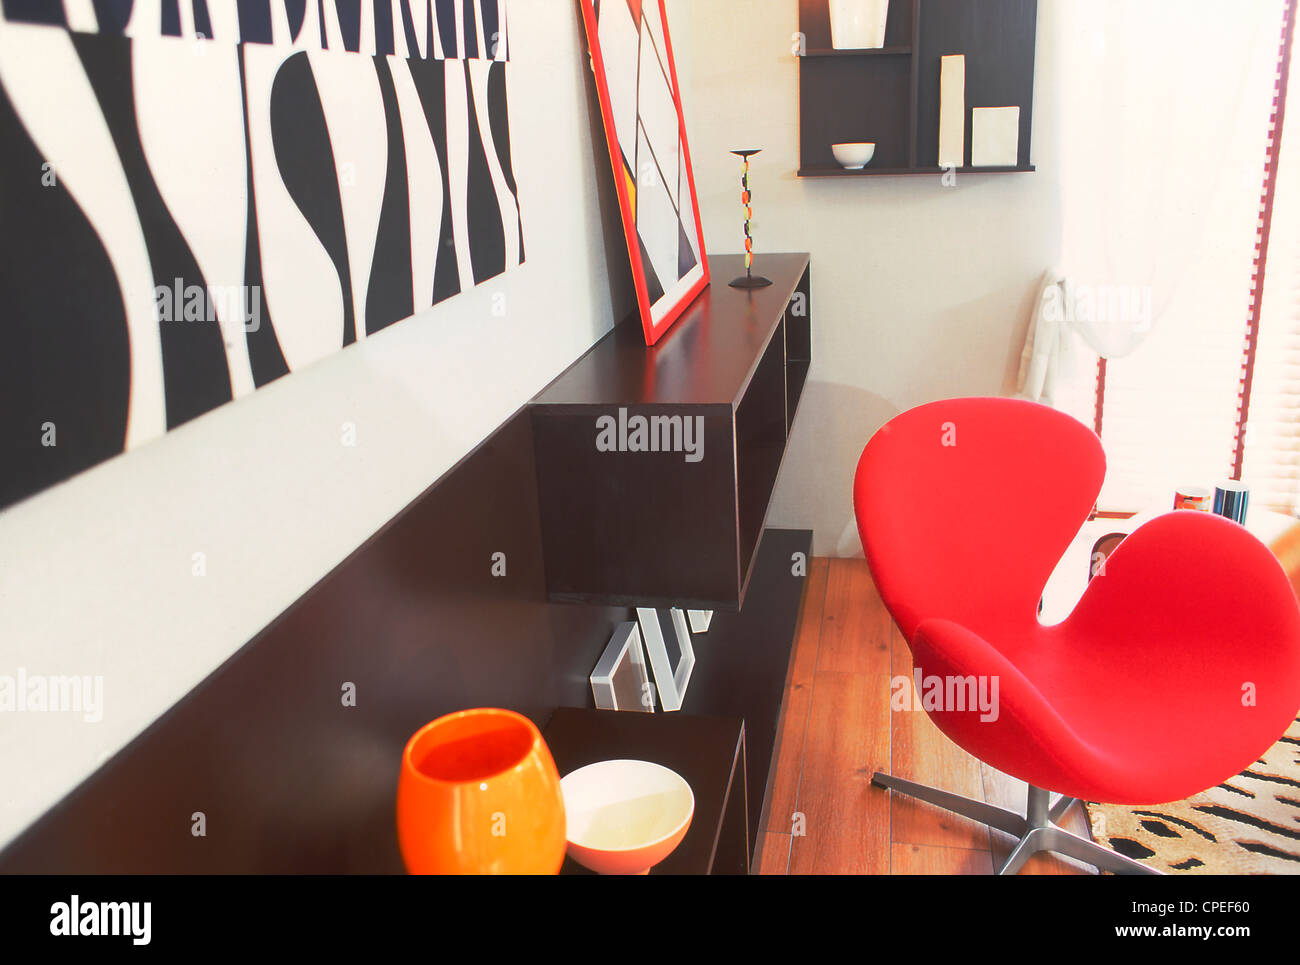 Silla Roja y estantes en habitación contemporánea Foto de stock